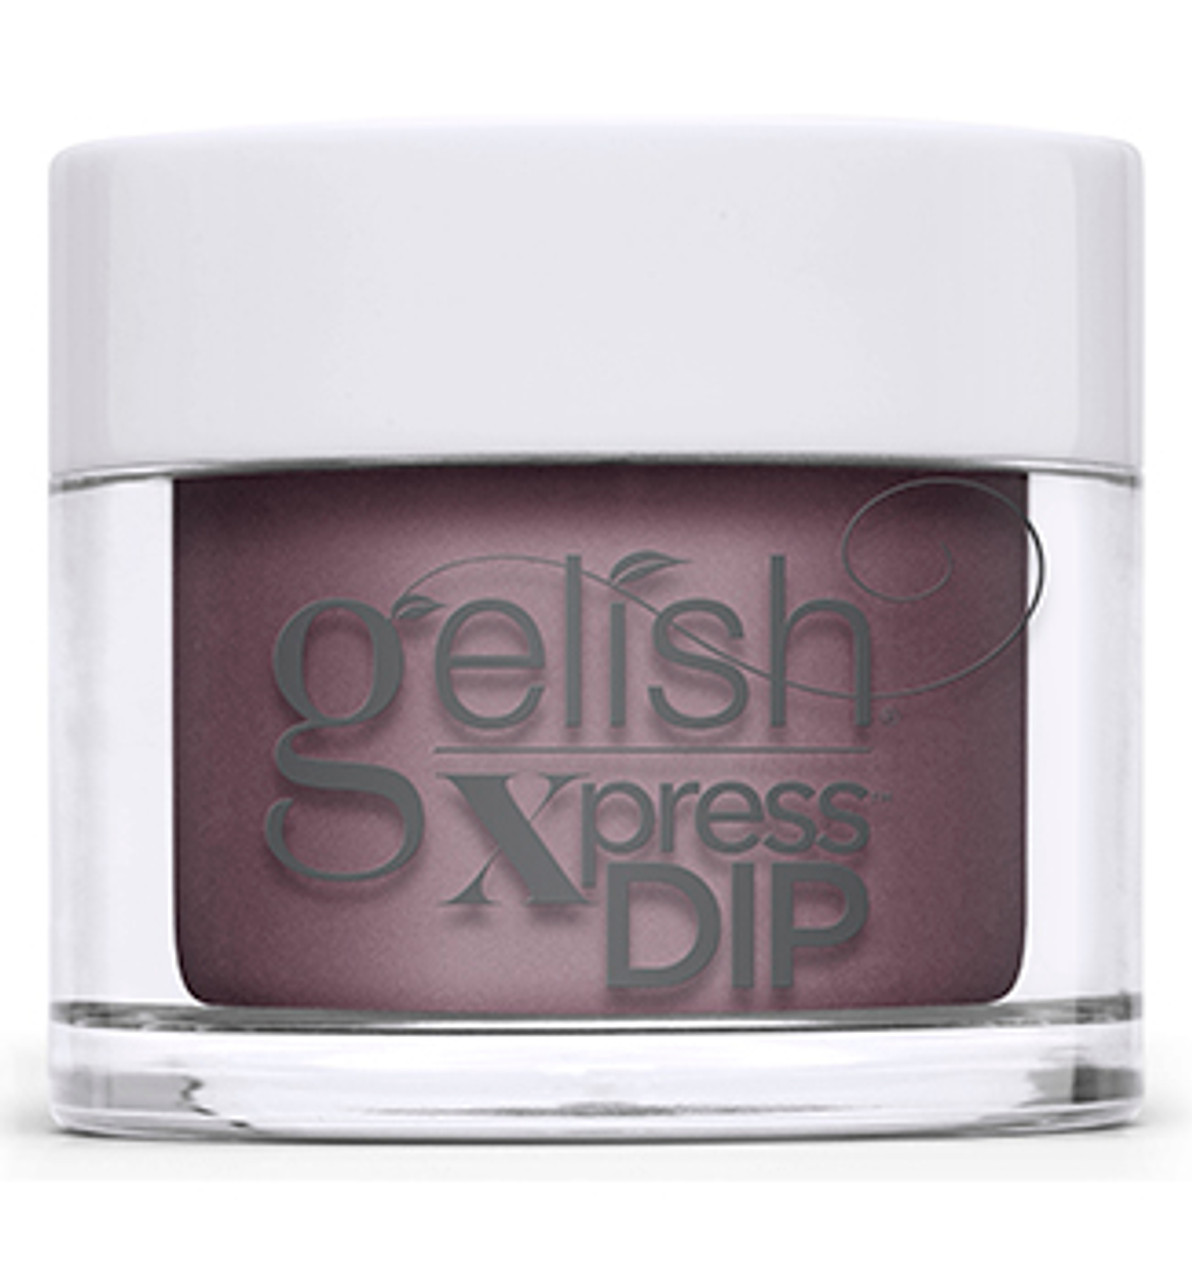 Gelish Xpress Dip Be My Sugarplum - 1.5 oz / 43 g